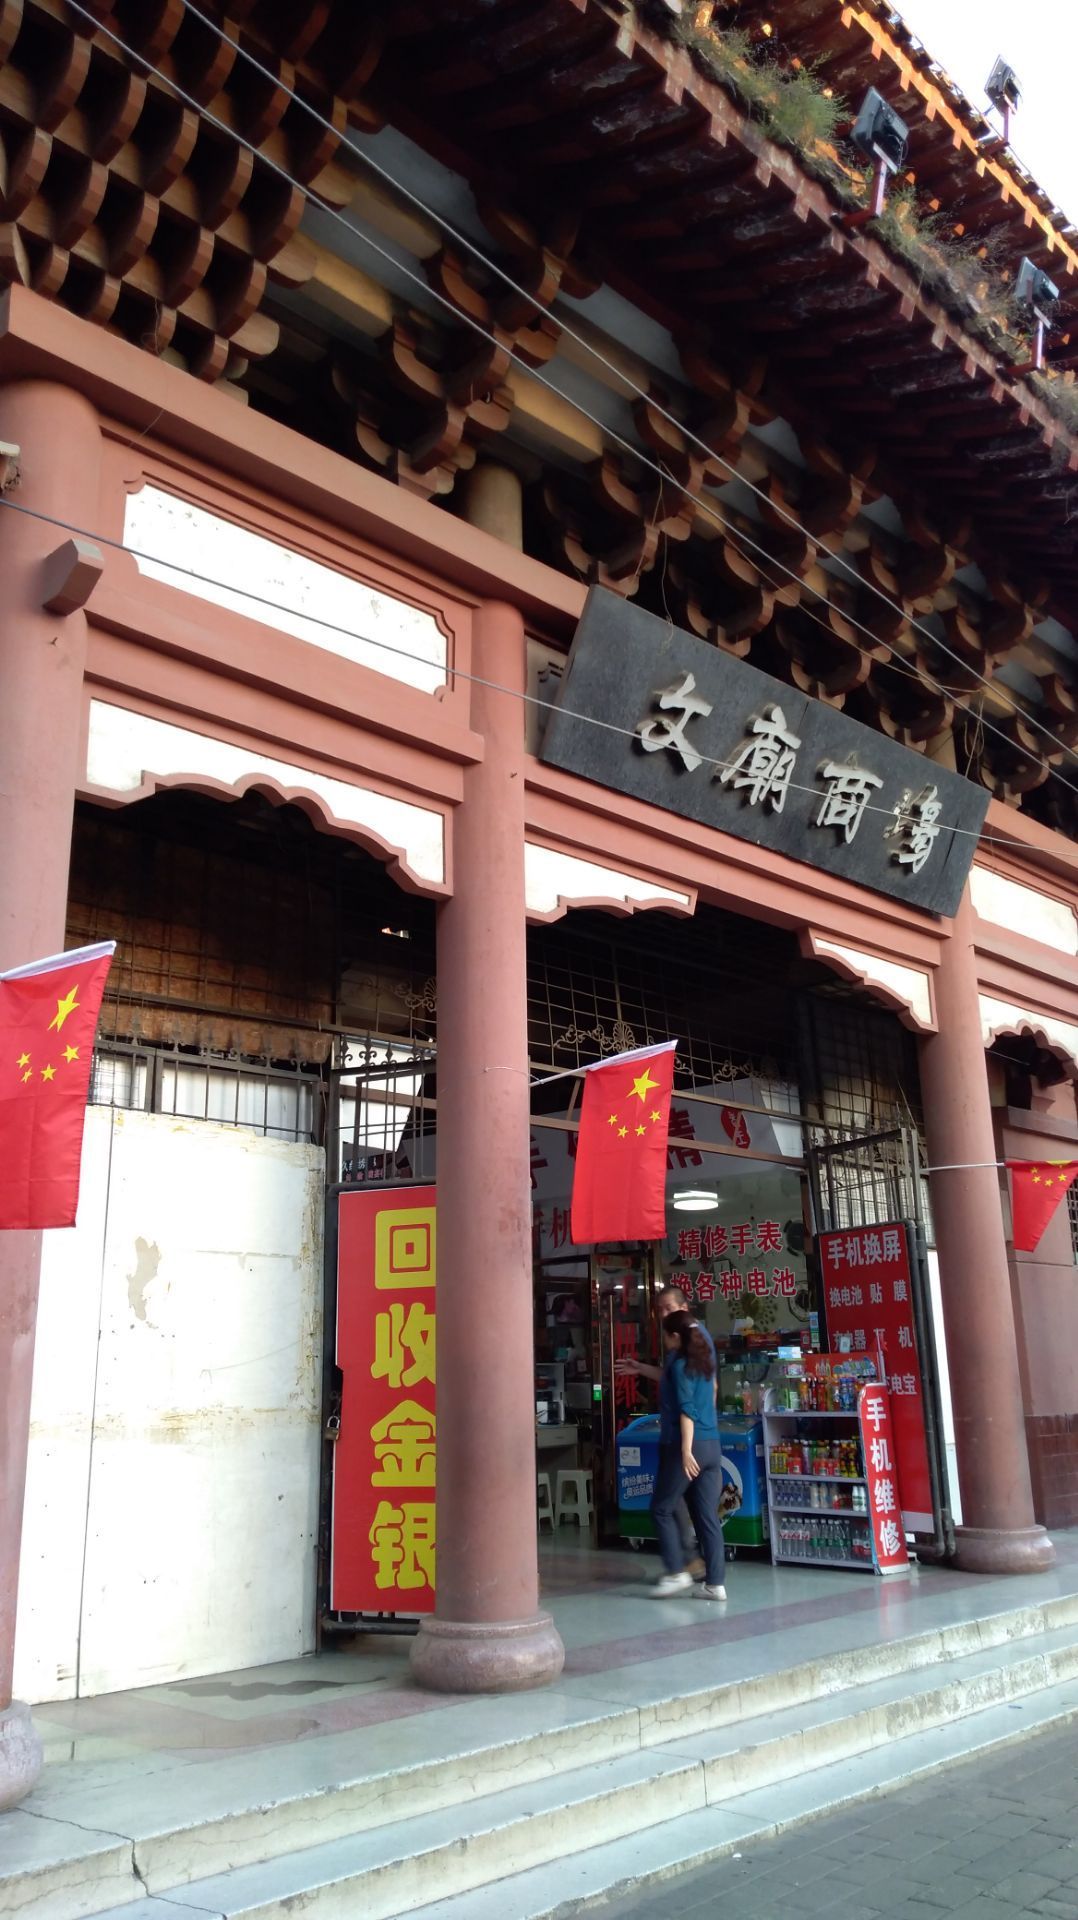 【携程攻略】天水文庙商场购物,天水的文庙商场位于天龙秦州区文庙的